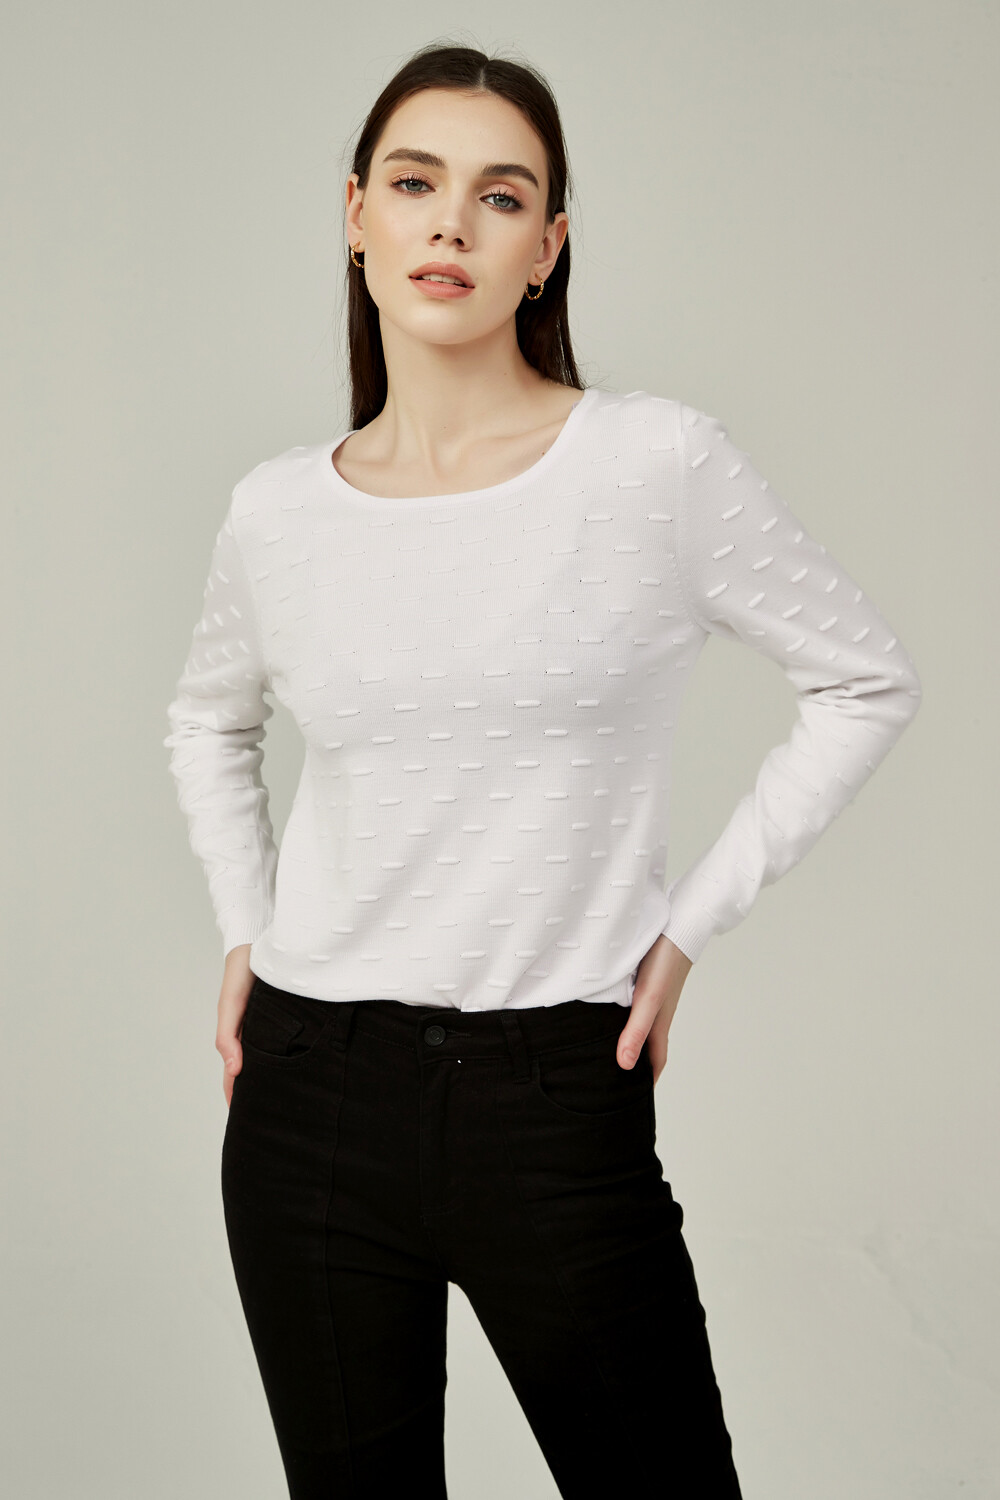 Sweater Colorpi Blanco